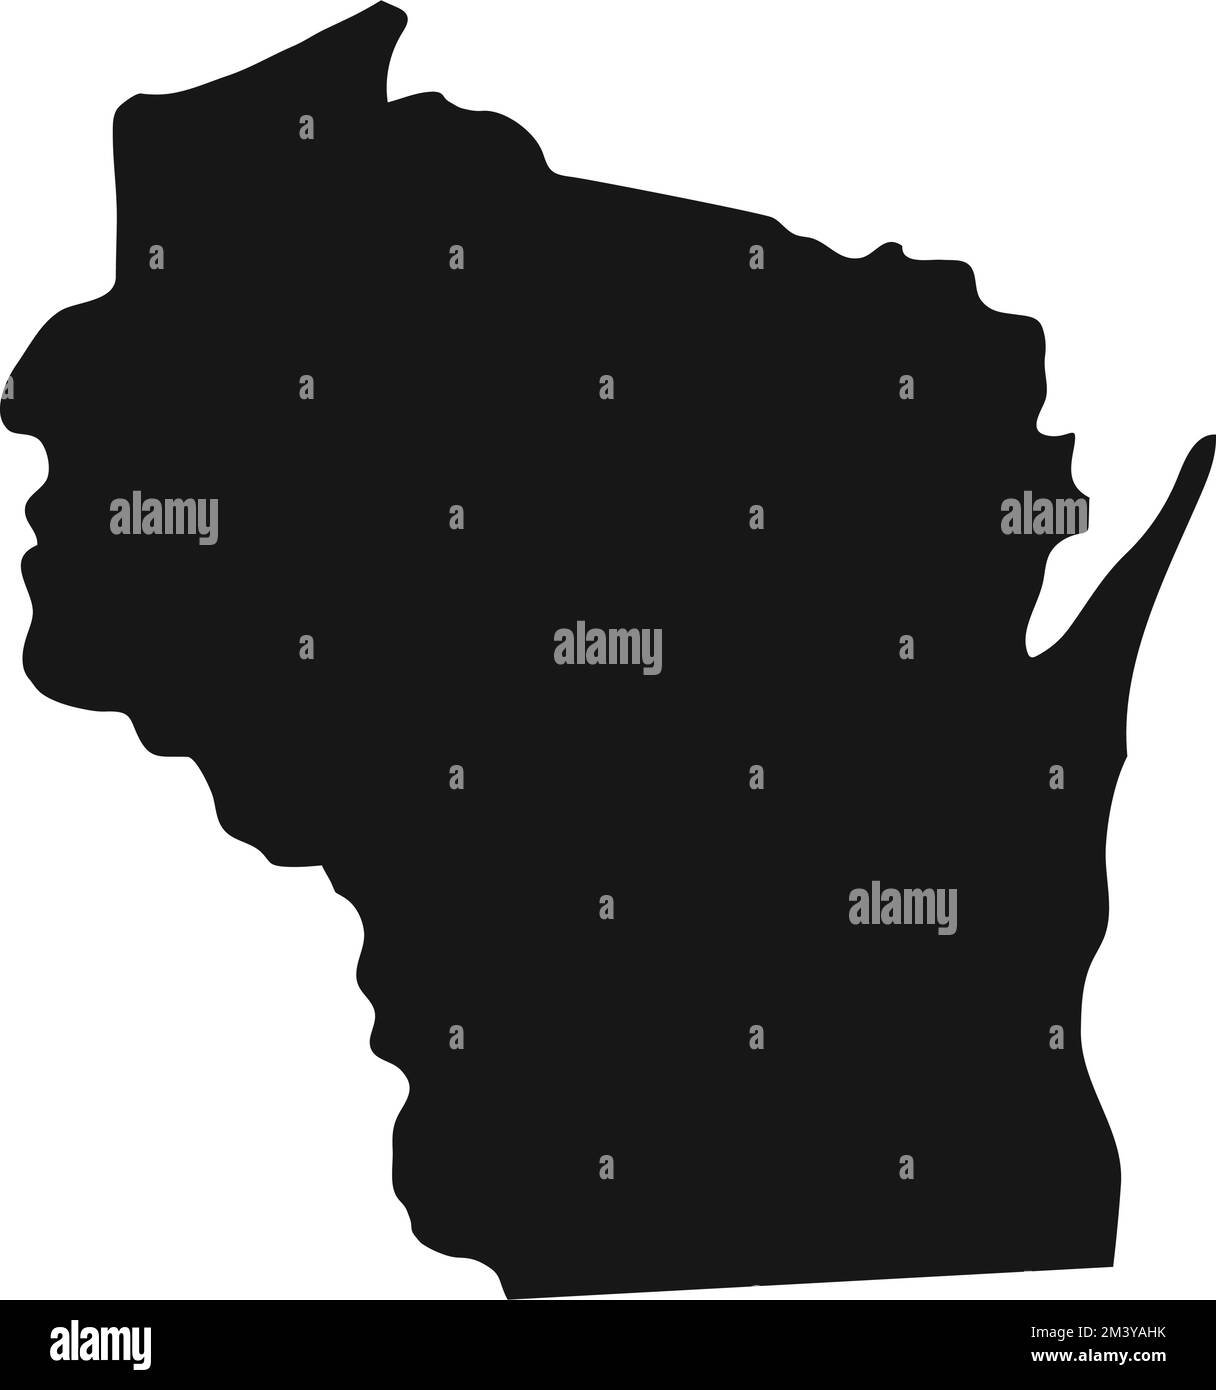 Silhouette der Staatsgrenze von Wisconsin. Stock Vektor